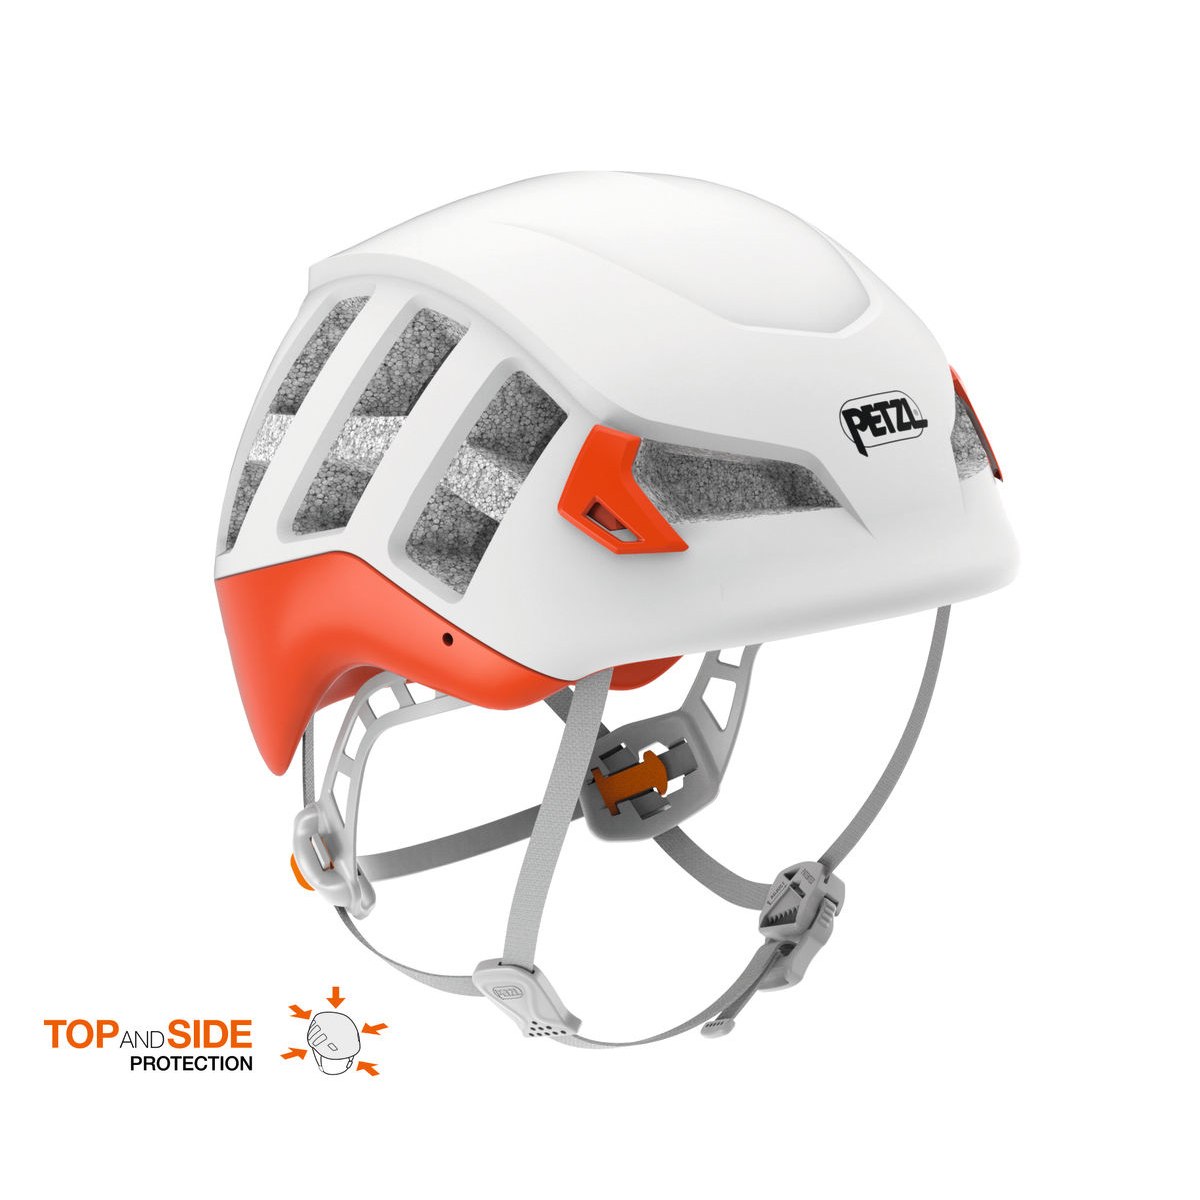 Productfoto van Petzl Meteor Helmet - red